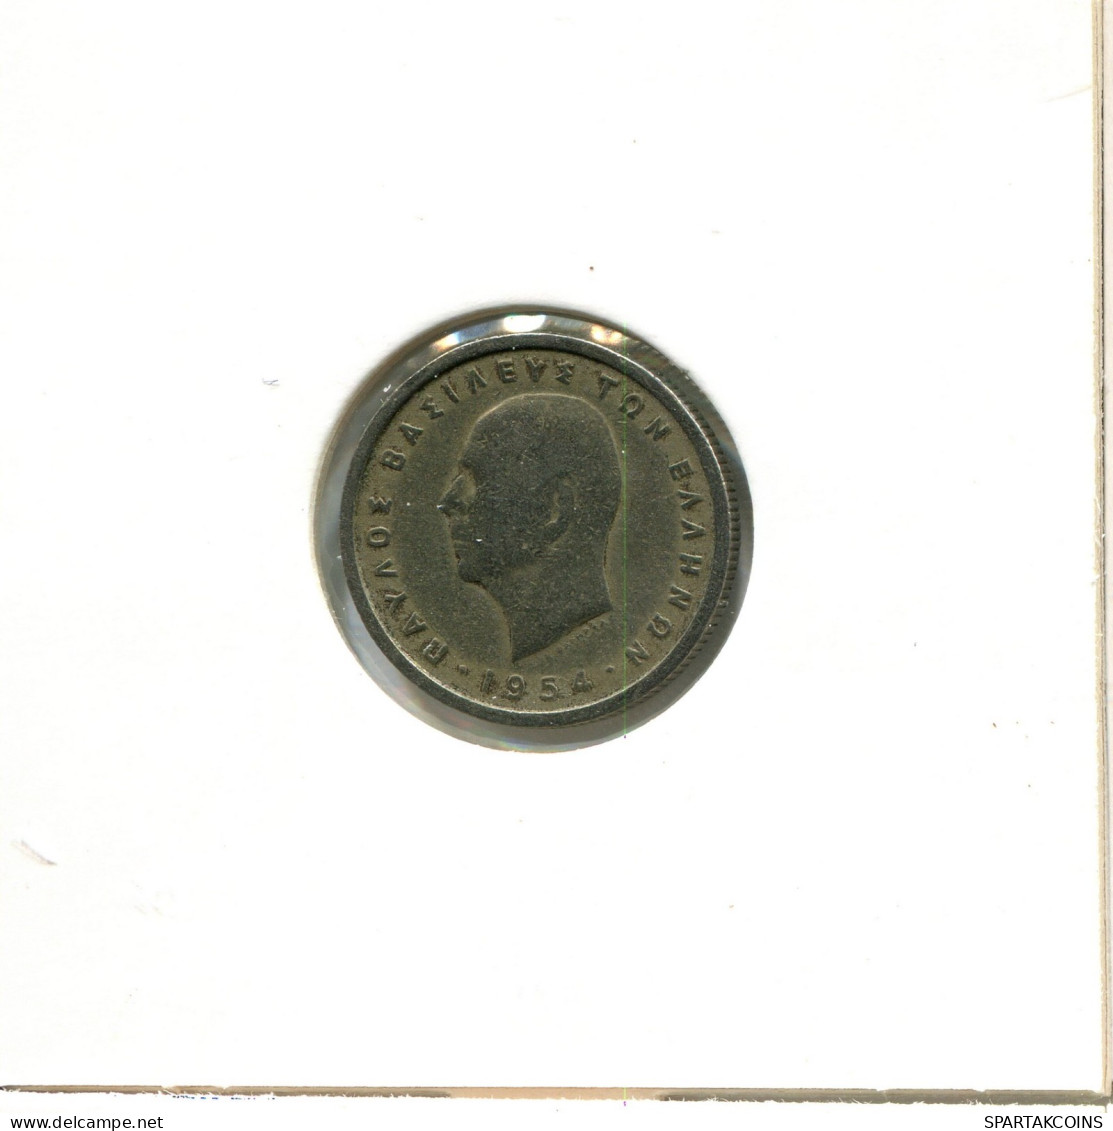 50 LEPTA 1954 GRECIA GREECE Moneda #AW550.E.A - Greece